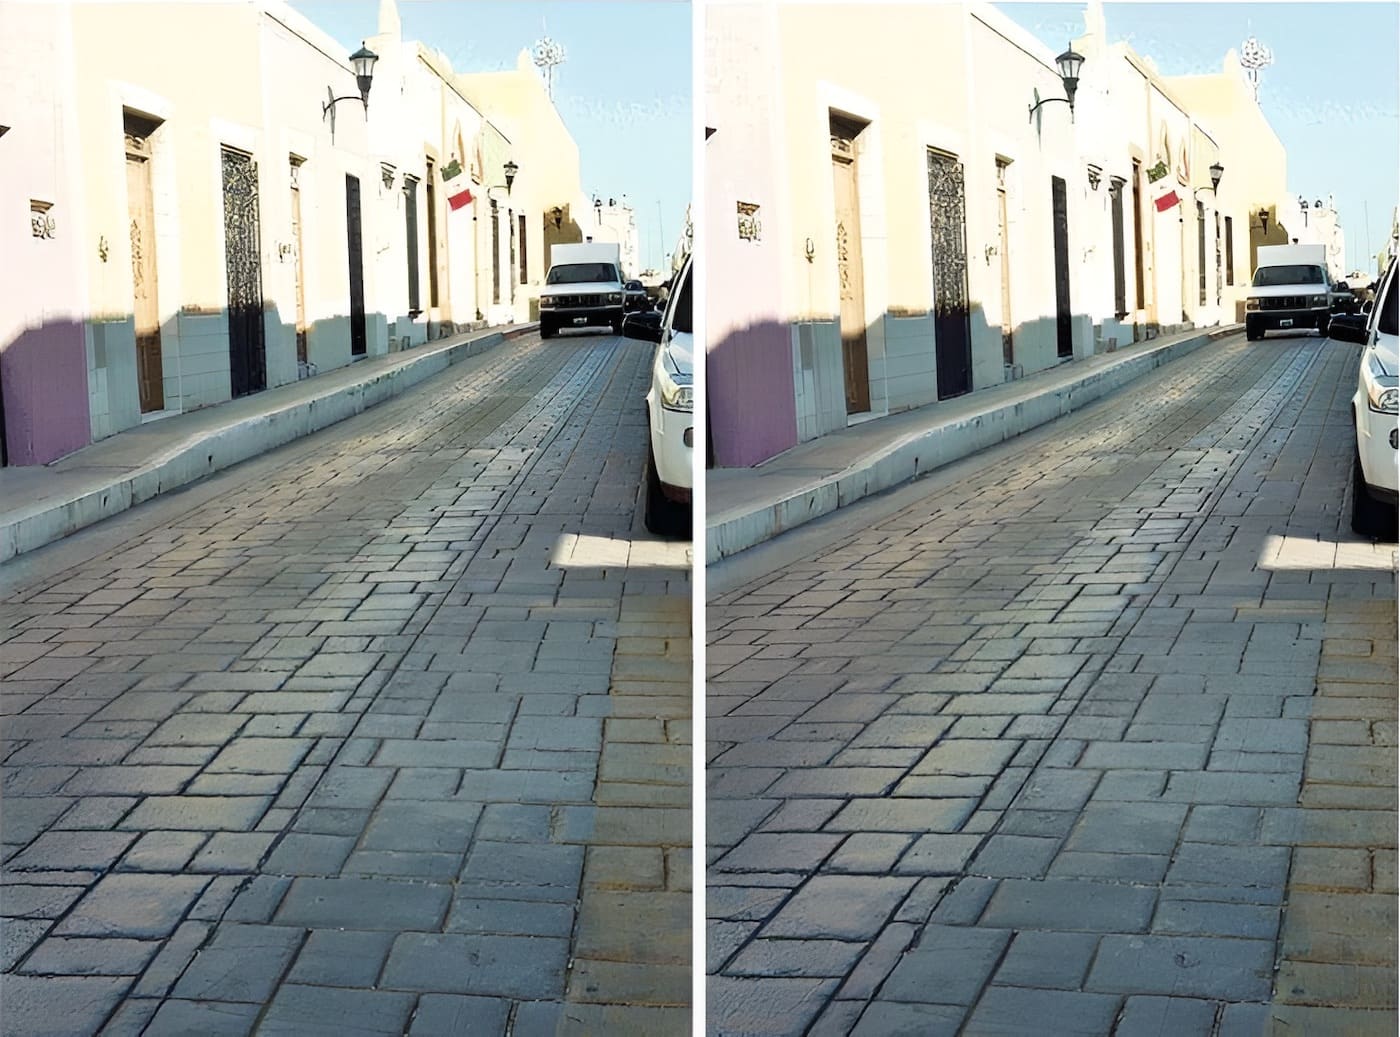 [Оптическая иллюзия] Почему эти две одинаковые фотографии кажутся разными